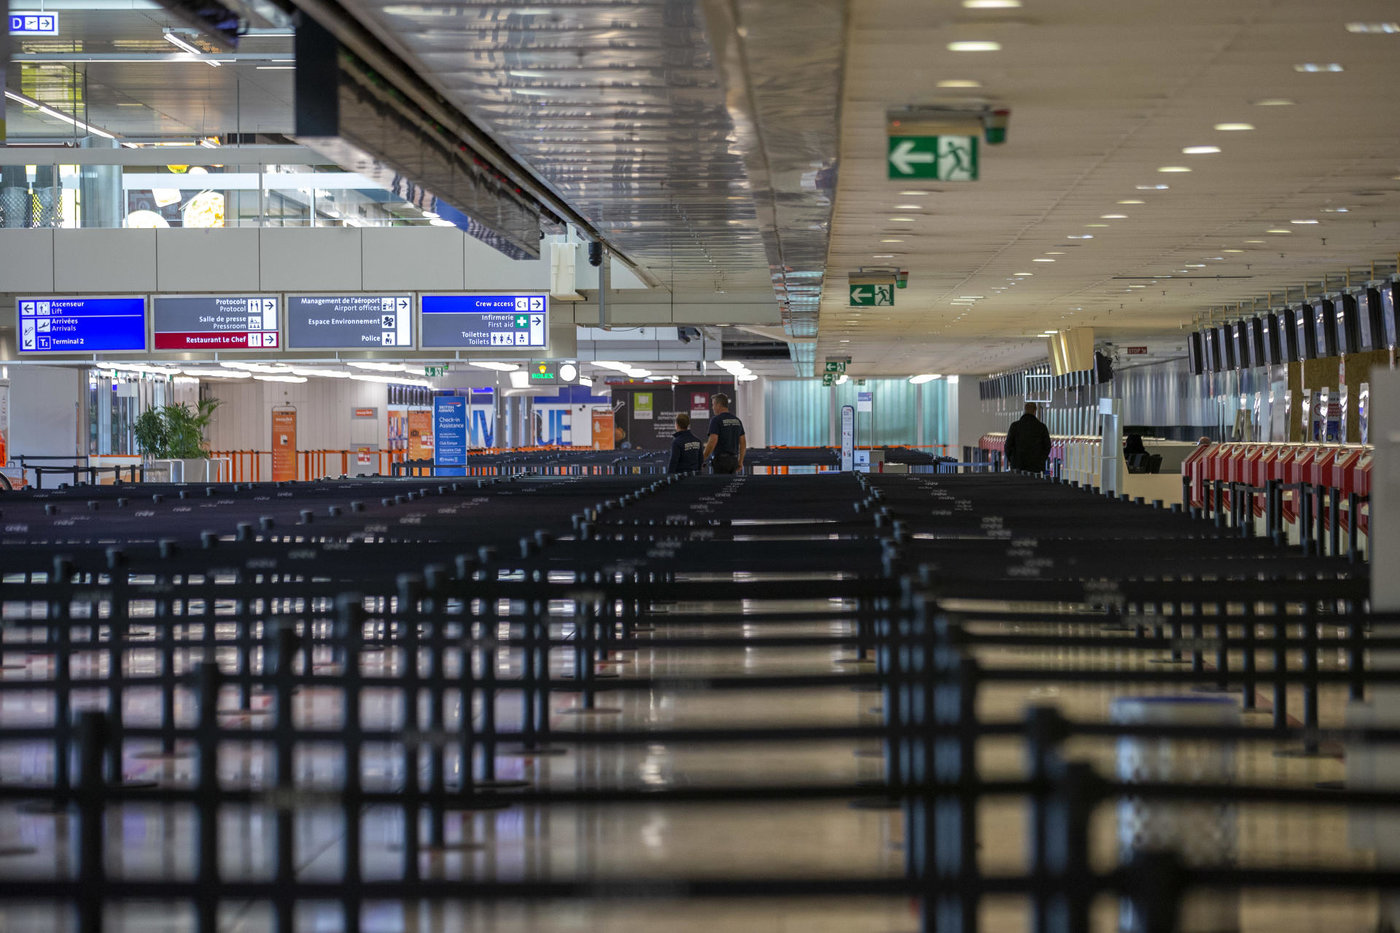 Aérien : le point sur les grèves et annulations de vols cet été en Europe